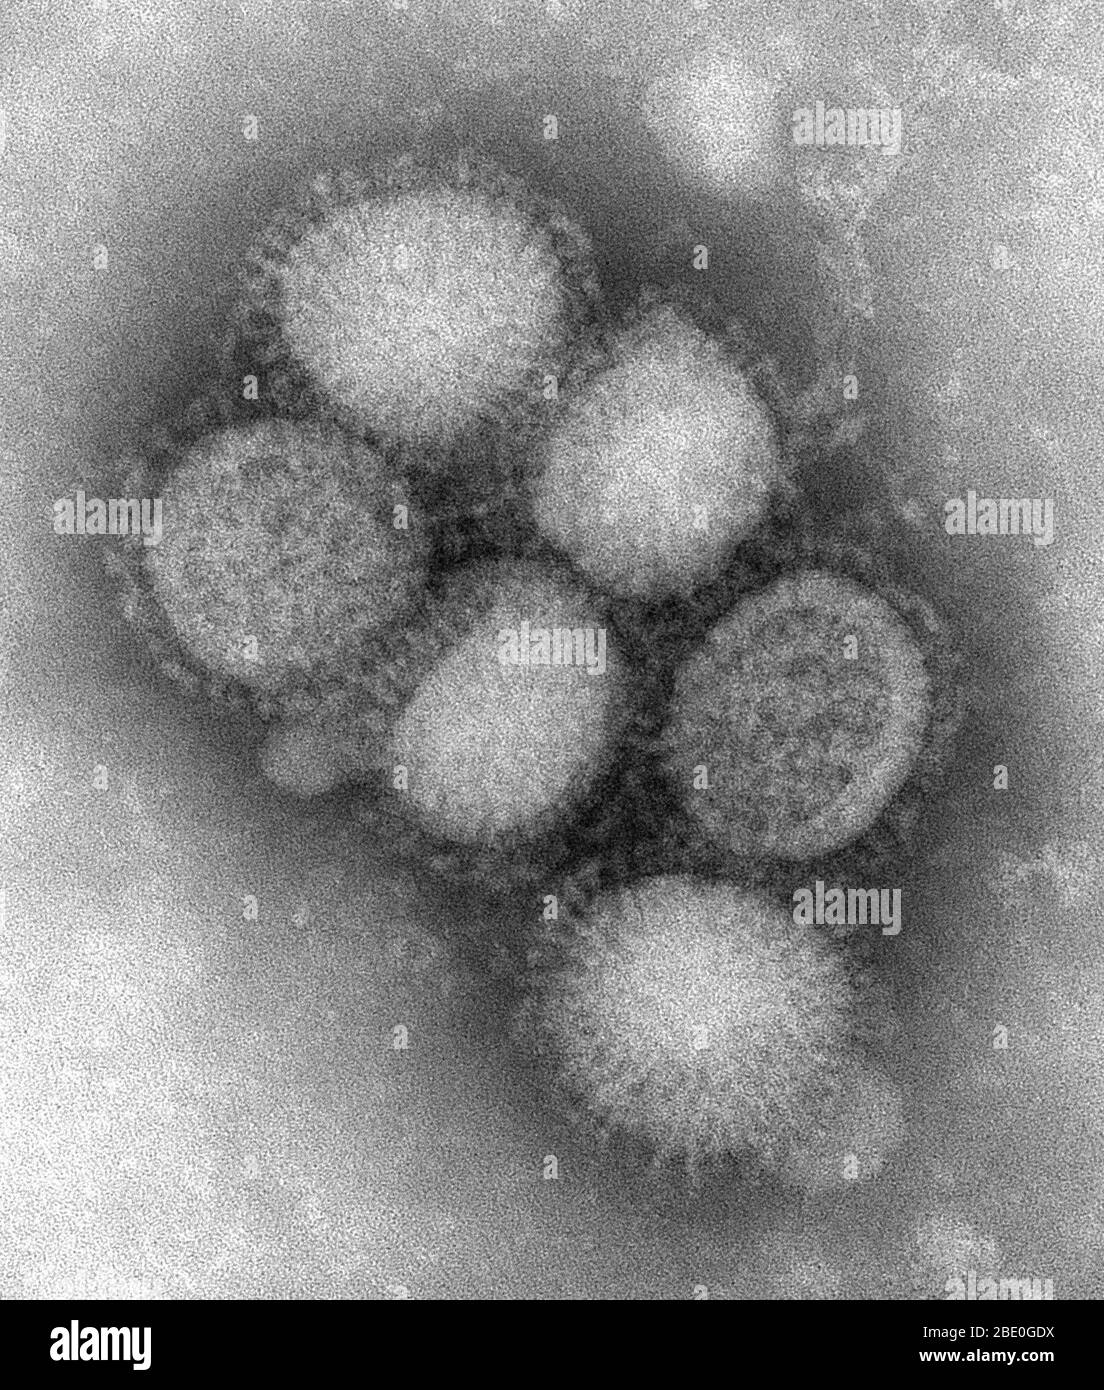 Micrographe électronique négatif coloré (TEM) de transmission d'une partie de la morphologie ultrastructurale du virus de la grippe porcine A/CA/4/09. La grippe porcine (grippe porcine) est une maladie respiratoire des porcs causée par le virus de la grippe de type A qui provoque régulièrement des éclosions de grippe chez les porcs. Les virus de la grippe porcine causent des taux élevés de maladie et de mortalité chez les porcs. Les virus de la grippe porcine peuvent circuler parmi les porcs tout au long de l'année, mais la plupart des éclosions se produisent à la fin de l'automne et en hiver, comme les éclosions chez les humains. Le virus de la grippe porcine classique (virus de la grippe A) était le premier isol Banque D'Images